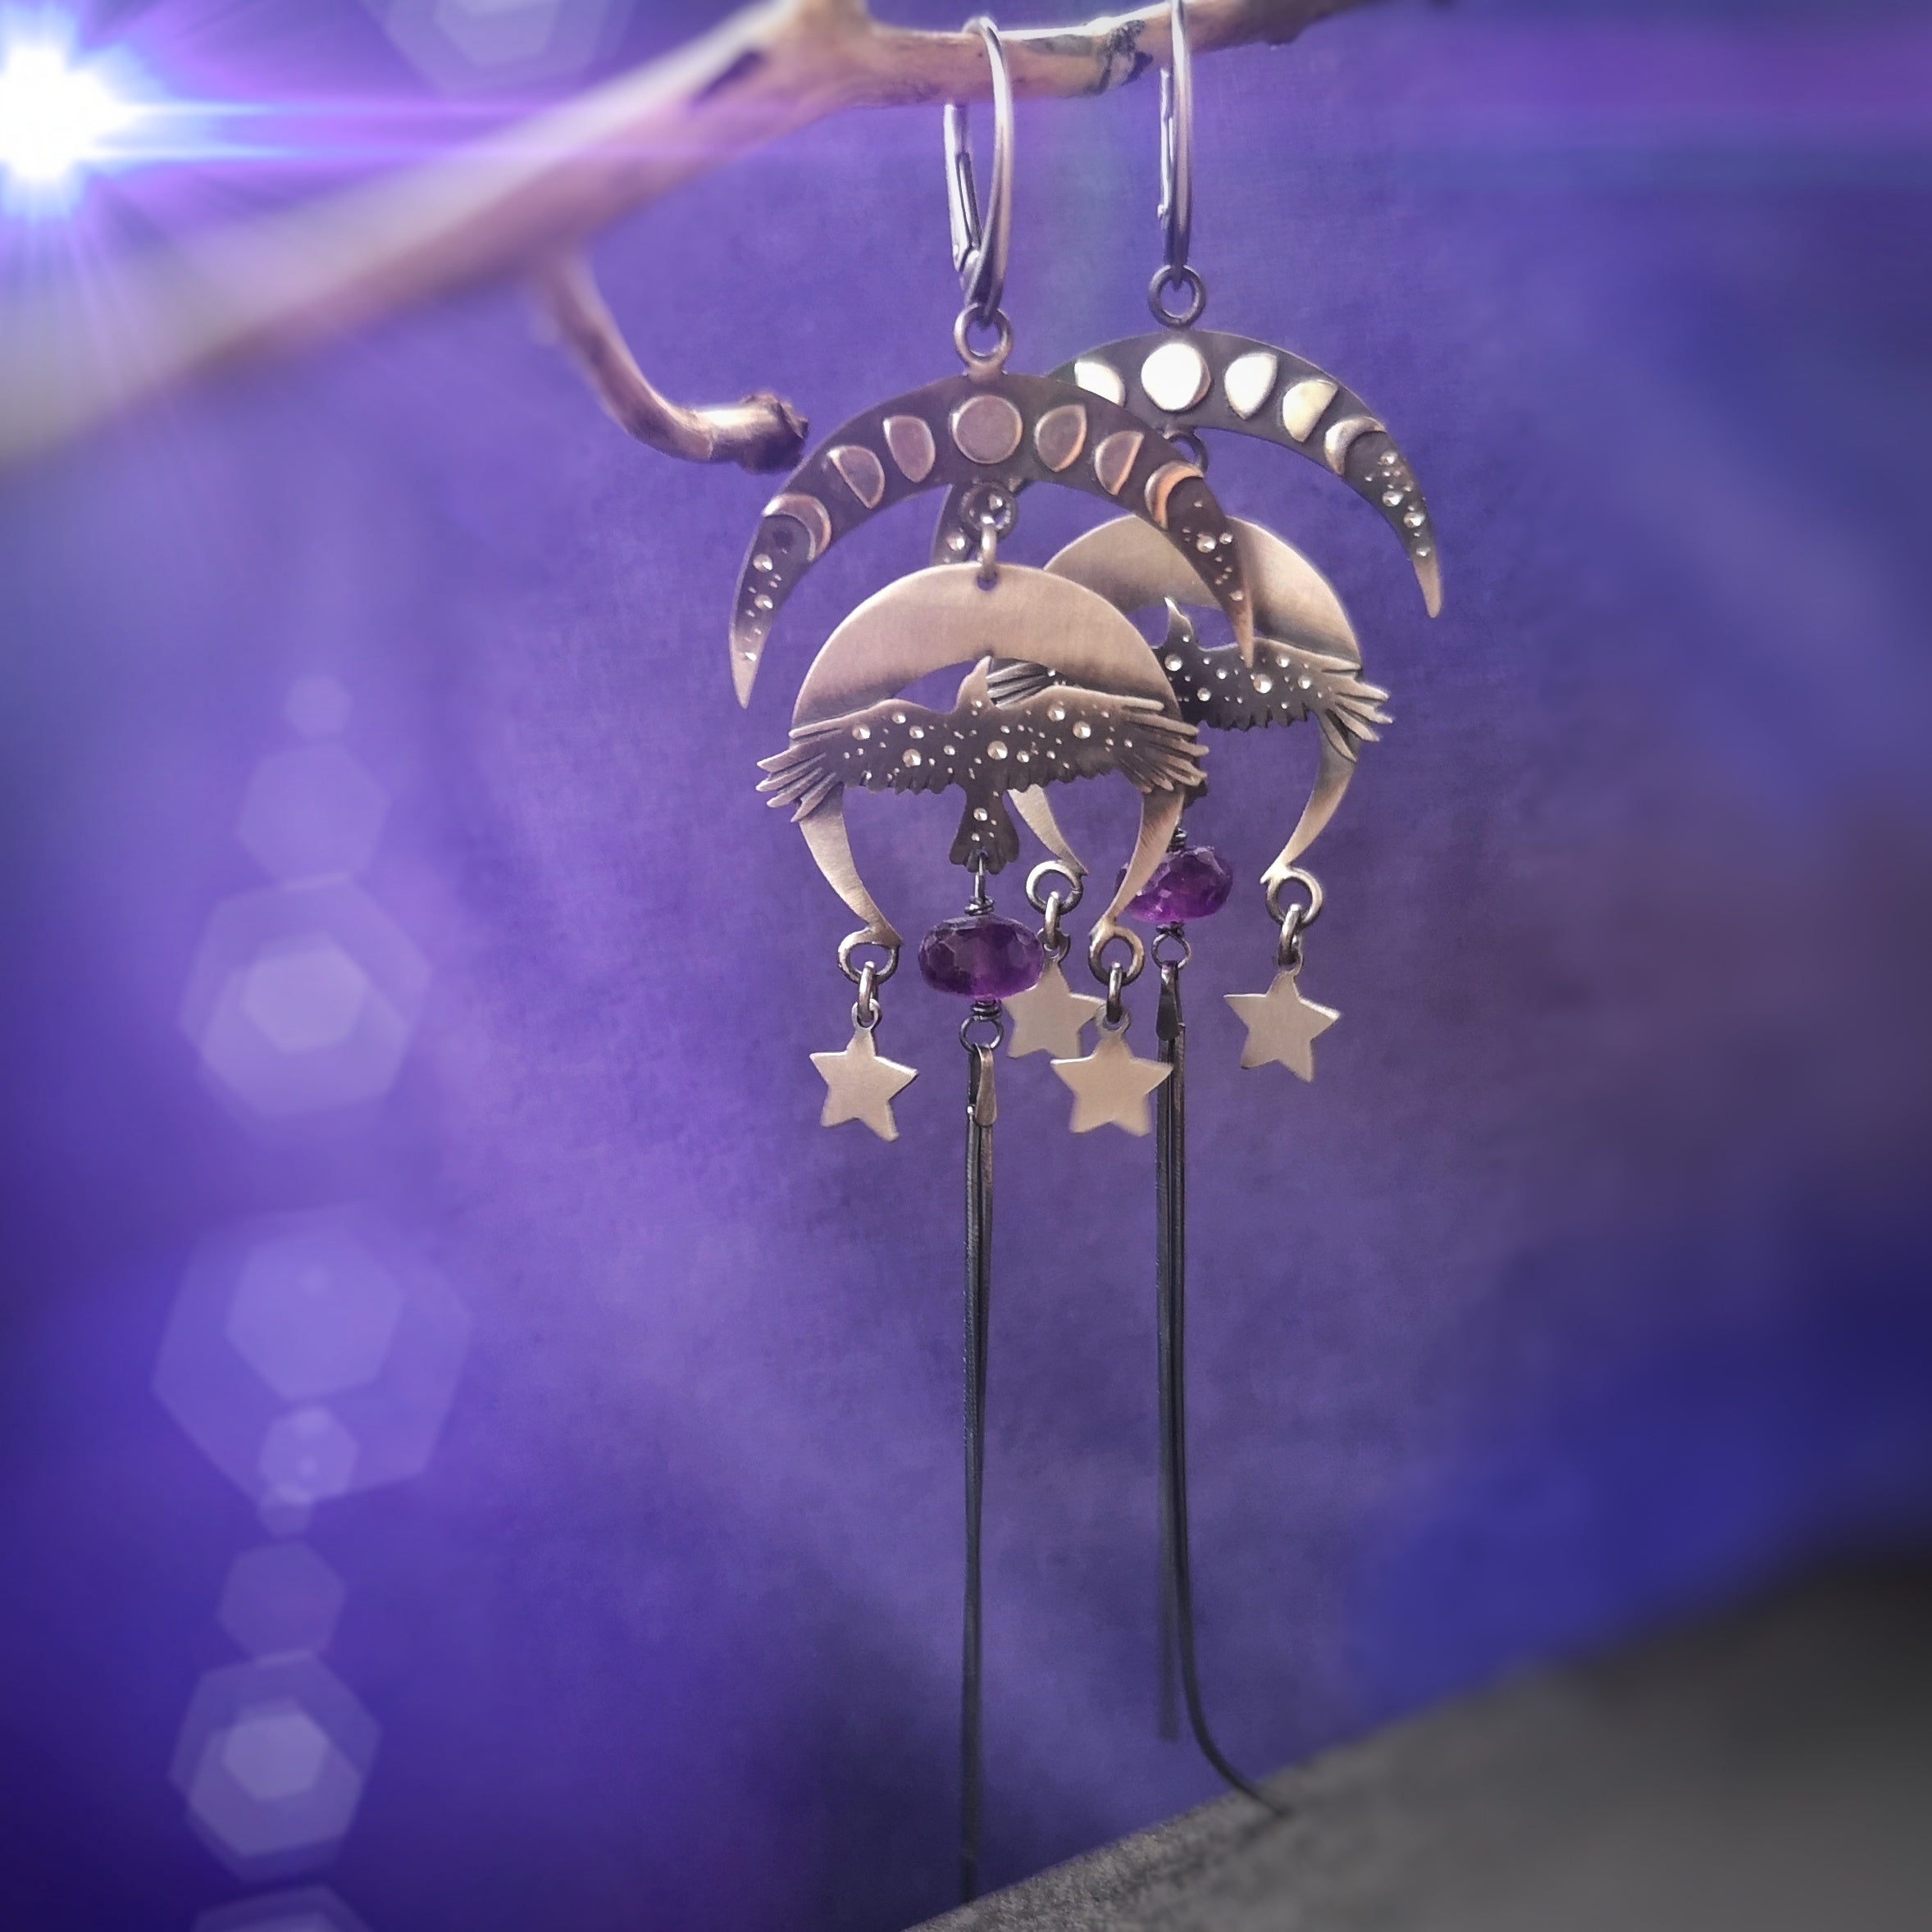 The Raven & Moon Chandelier Earrings